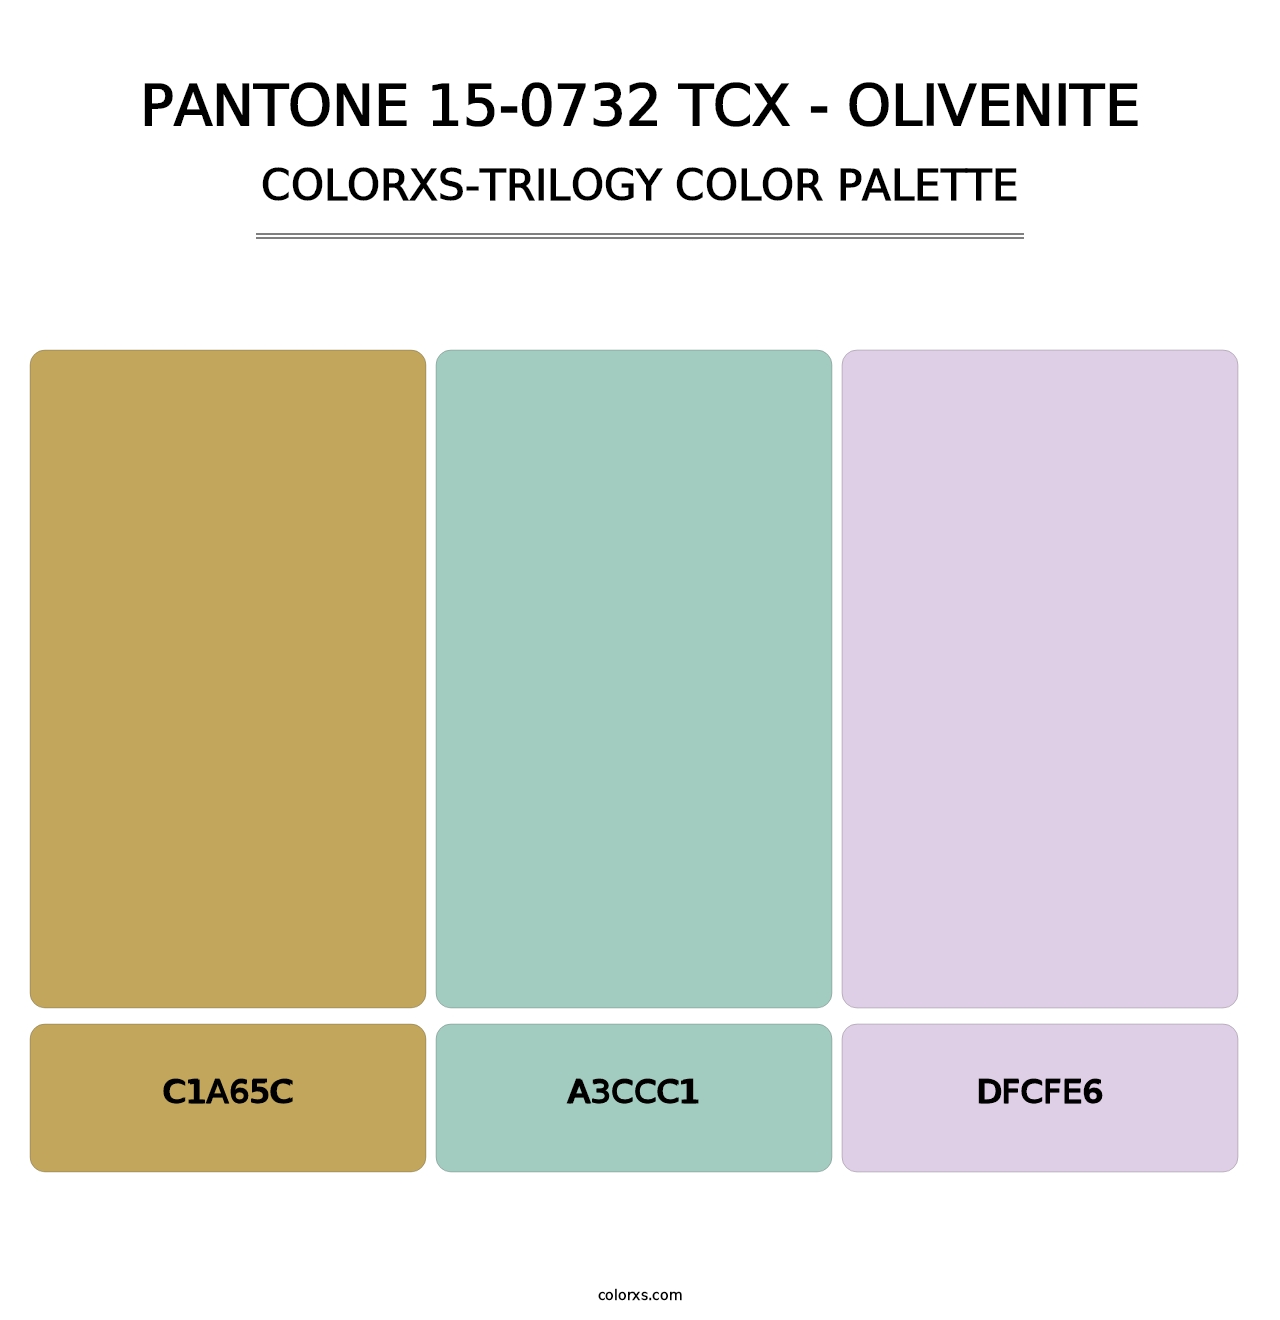 PANTONE 15-0732 TCX - Olivenite - Colorxs Trilogy Palette